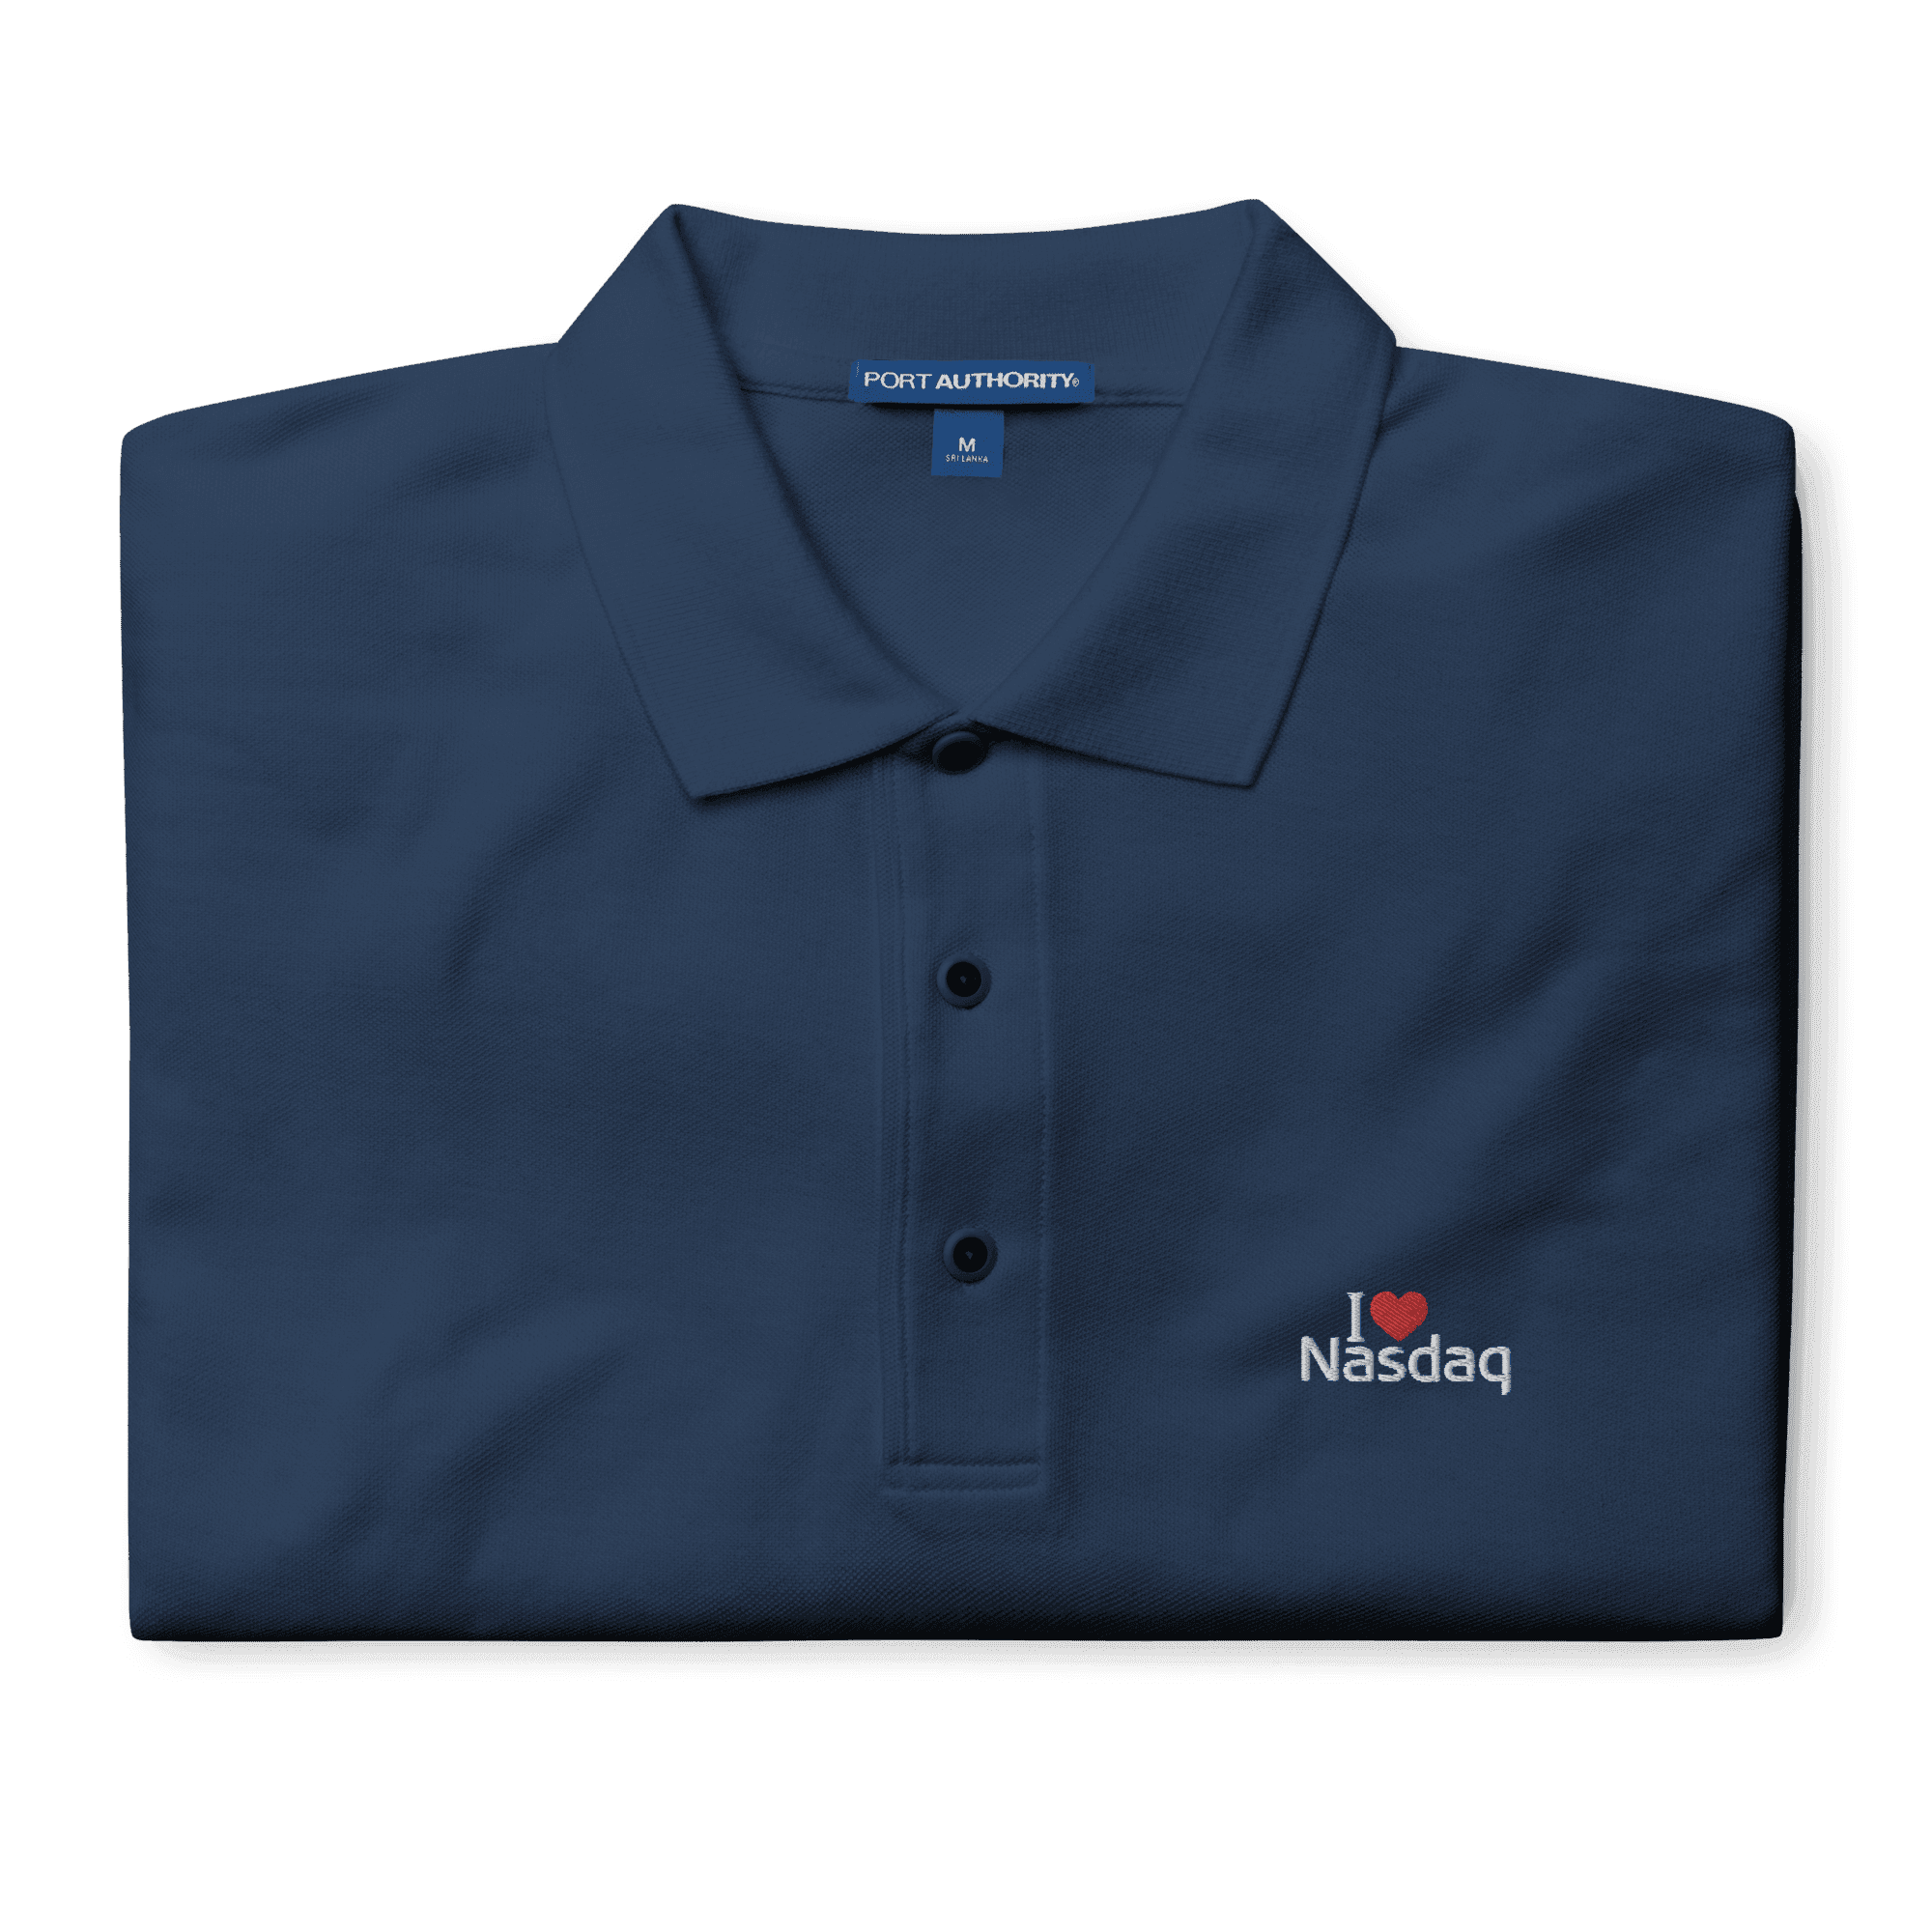 I LUV Nasdaq Polo Shirt - InvestmenTees